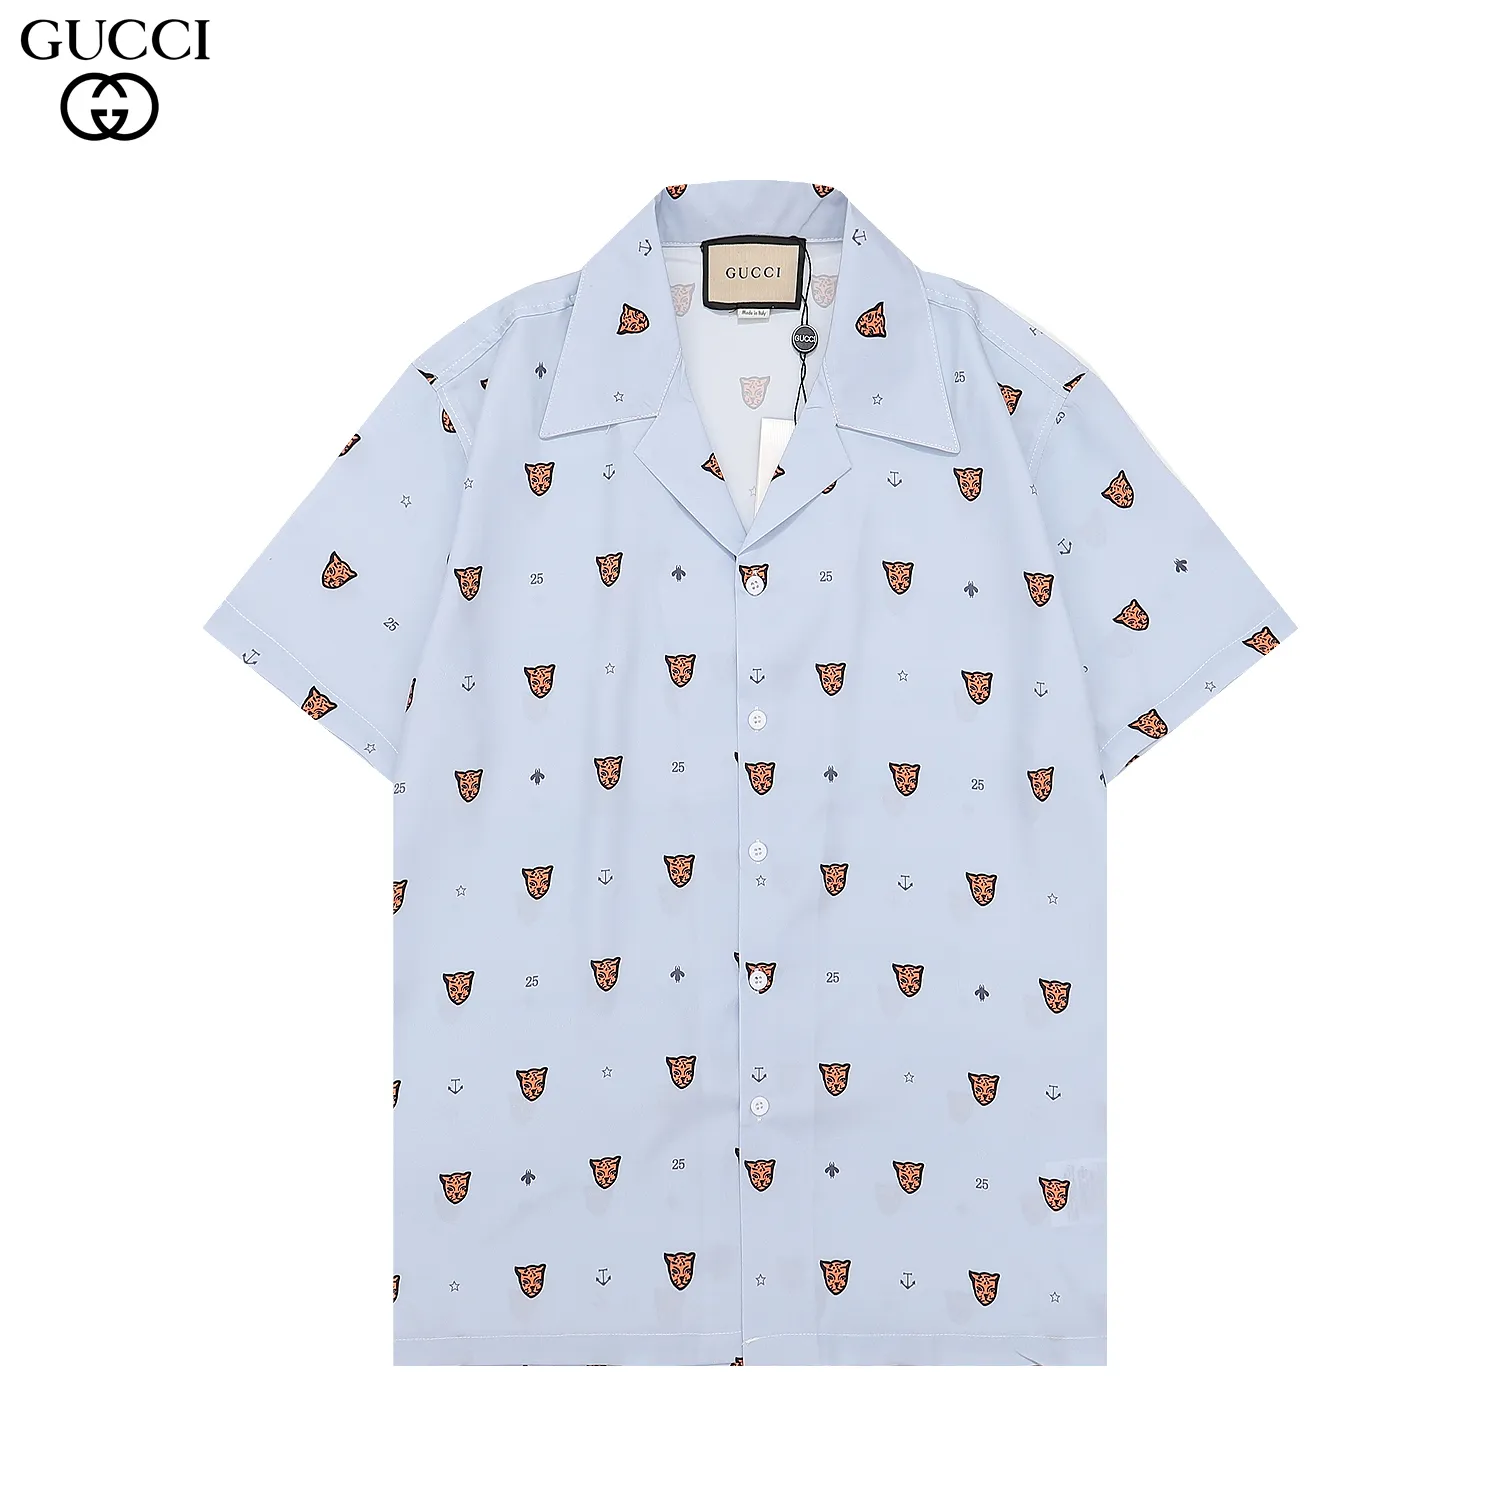 6# Camisas de grife de luxo Moda masculina Camisa de boliche com estampa geométrica Hawaii Floral Camisas casuais masculinas slim fit manga curta variedade M-XXXL # 51